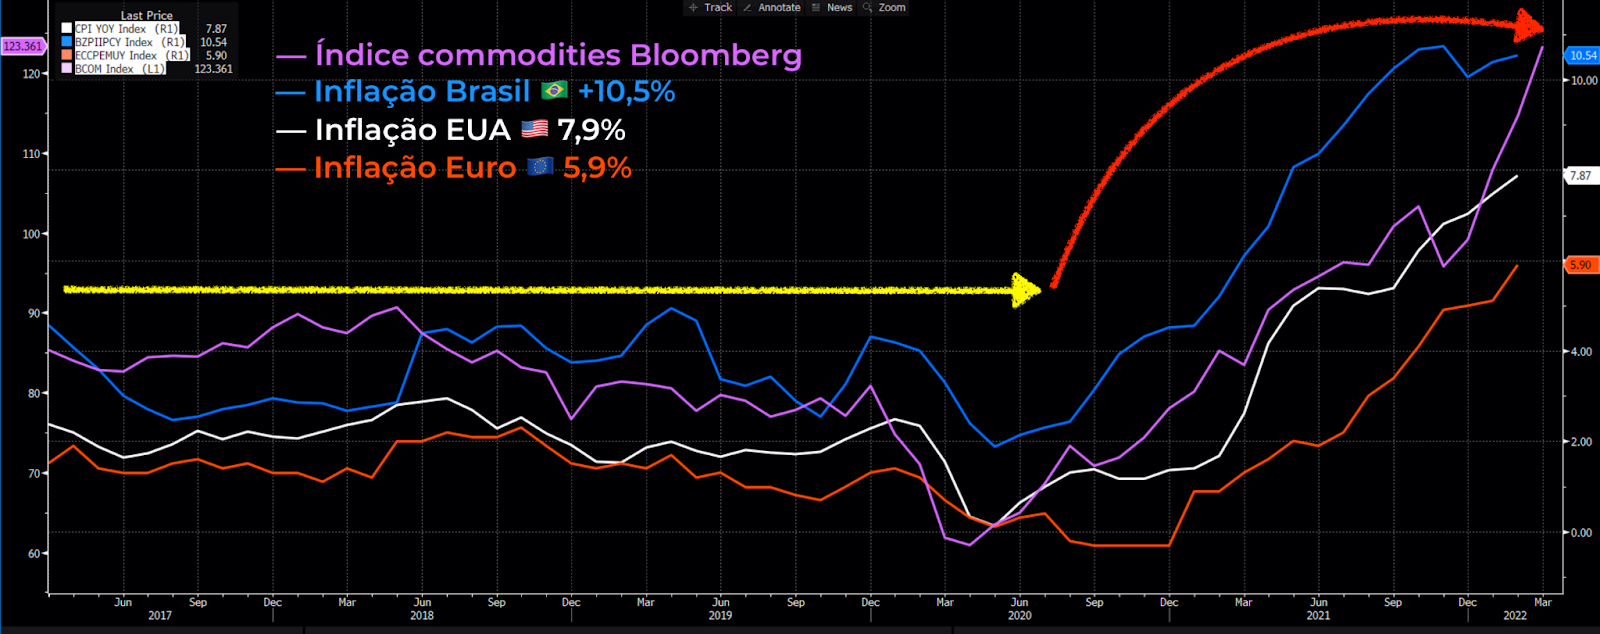 Inflação Brasil (linha azul), Índice de commodities Bloomberg (roxa), Inflação EUA (branca) e Inflação Zona do Euro (laranja).